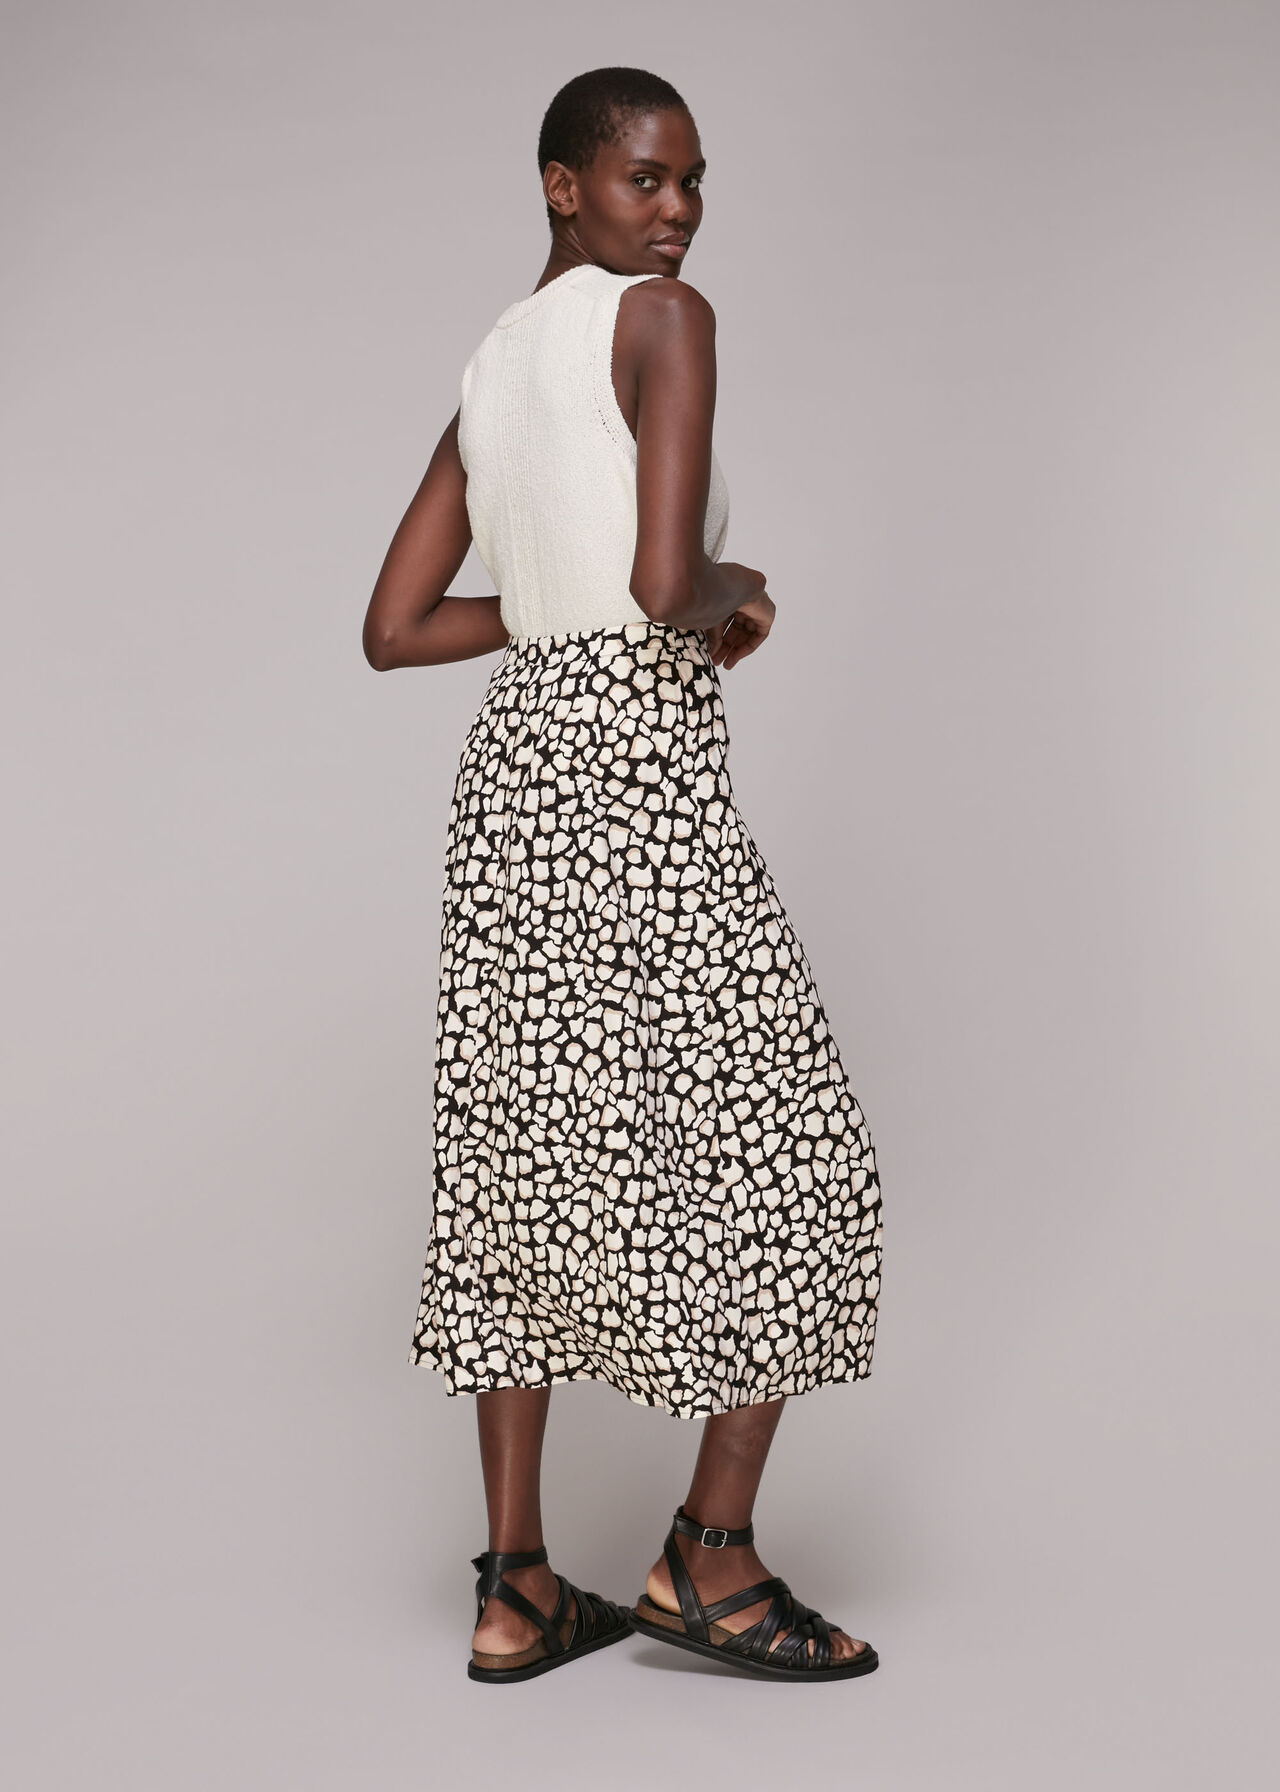 Giraffe Skirt